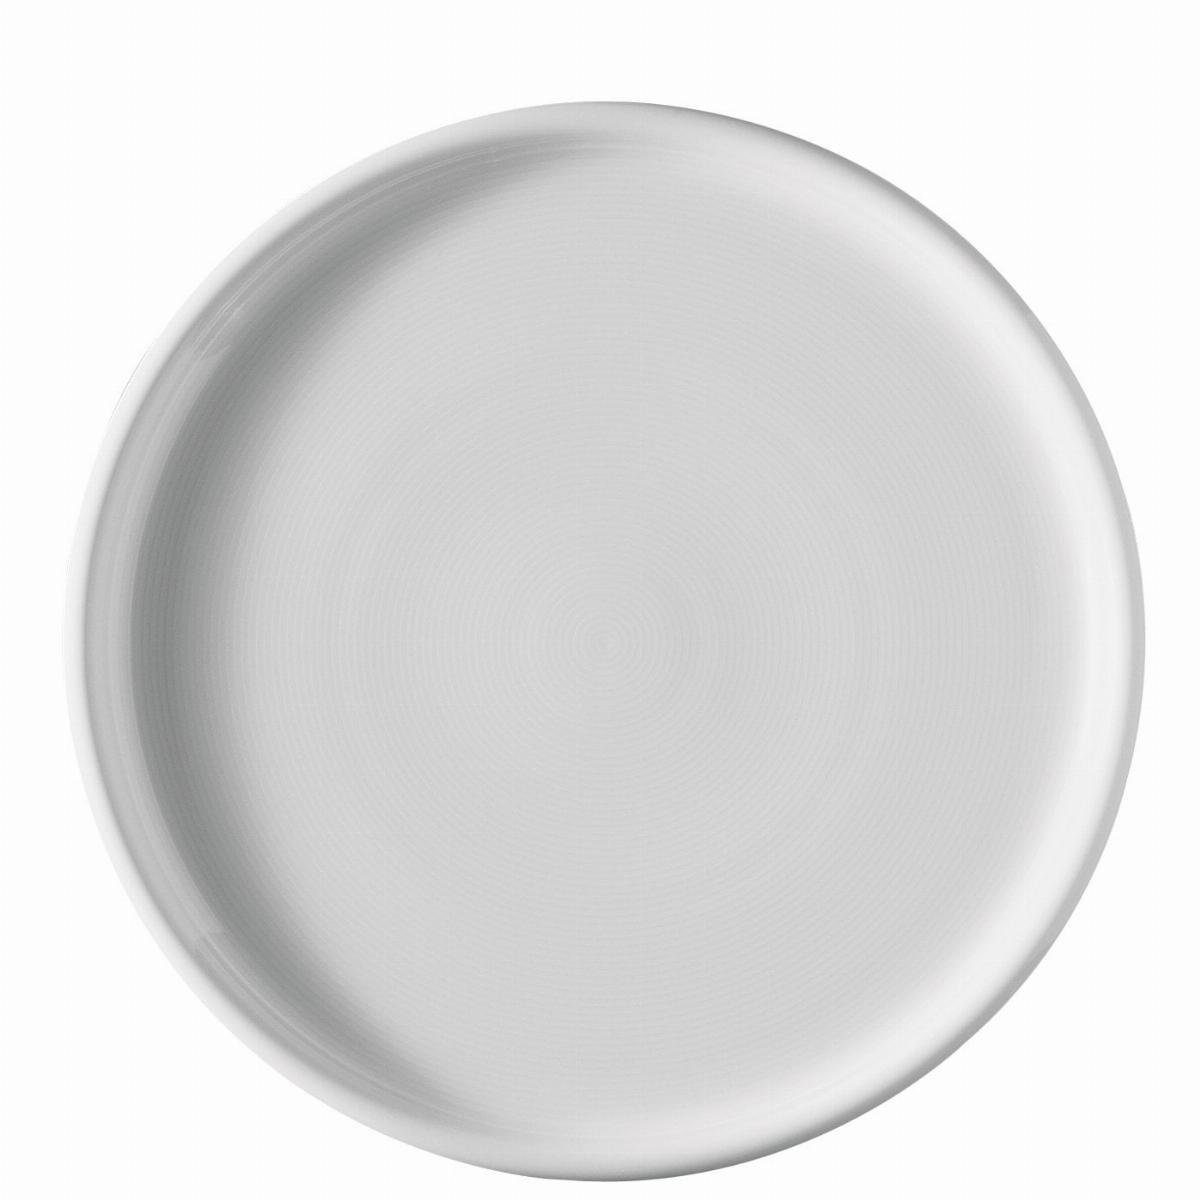 Thomas Porzellan Servierplatte Pizzateller / Tortenplatte 32 cm - TREND Weiß - 2 Stück | Servierplatten